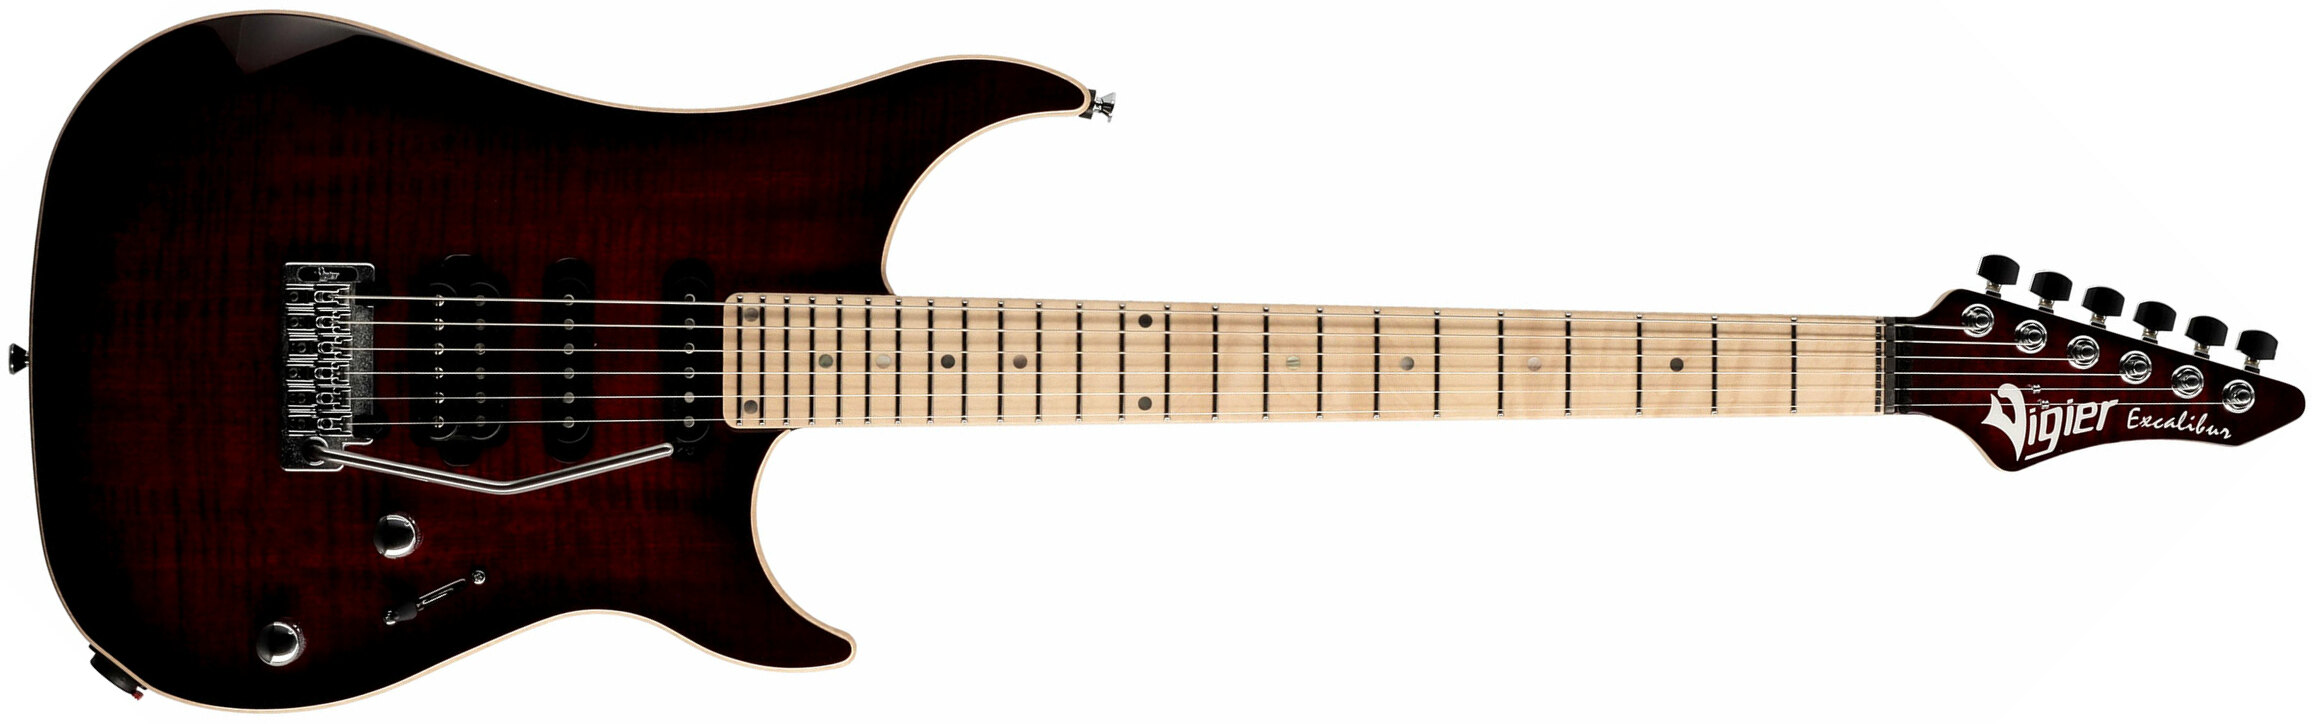 Vigier Excalibur Ultra Blues Hss Trem Mn - Deep Burgundy - Str shape electric guitar - Main picture